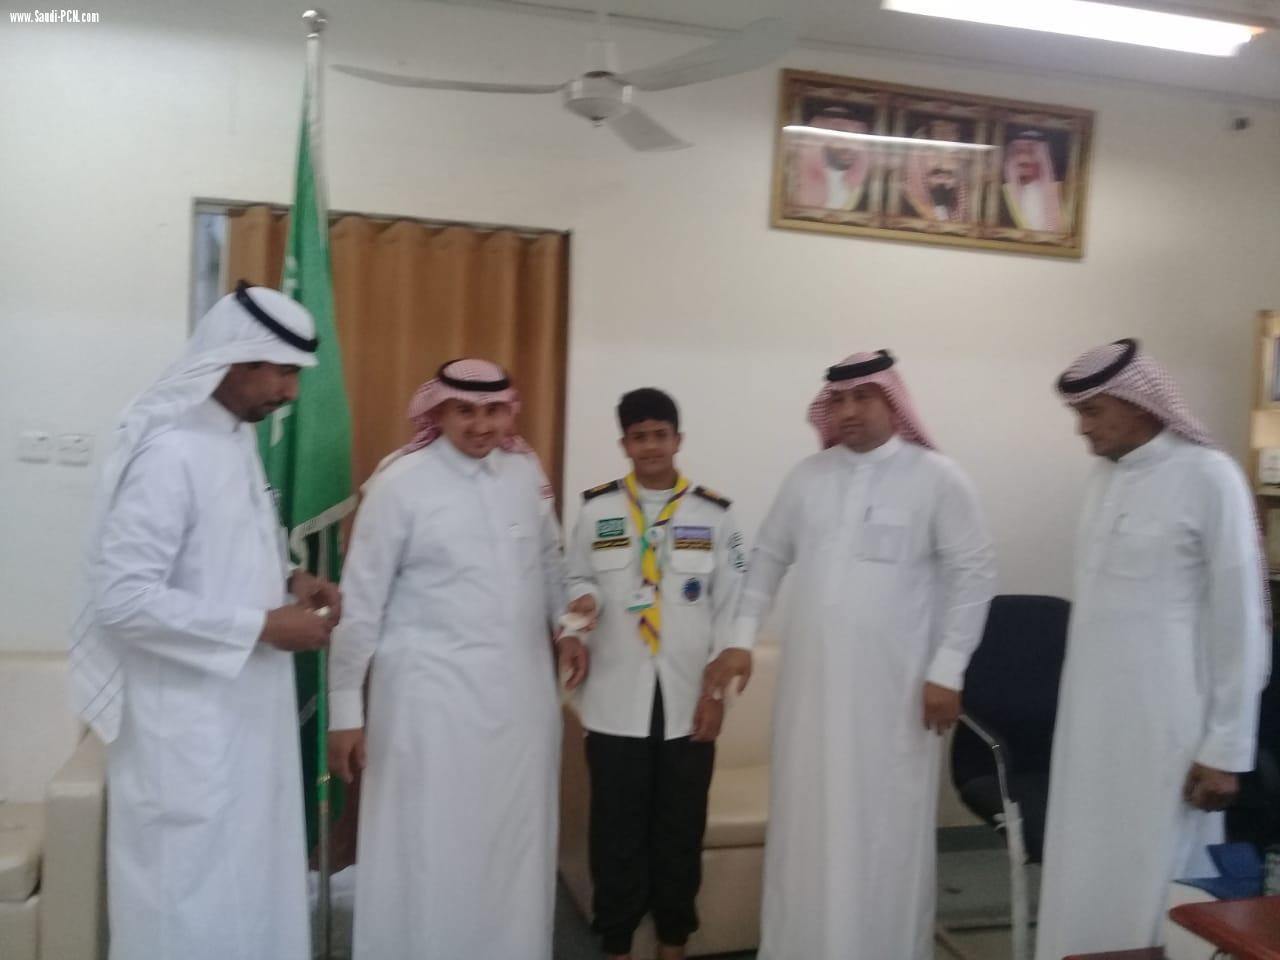 مساعد مدير مكتب التعليم بالعيدابي ( الغزواني )  يكرم الفريق الكشفي بمتوسطة العيدابي الأولى لحصولهم على المركز الأول بمسابقة رسل السلام